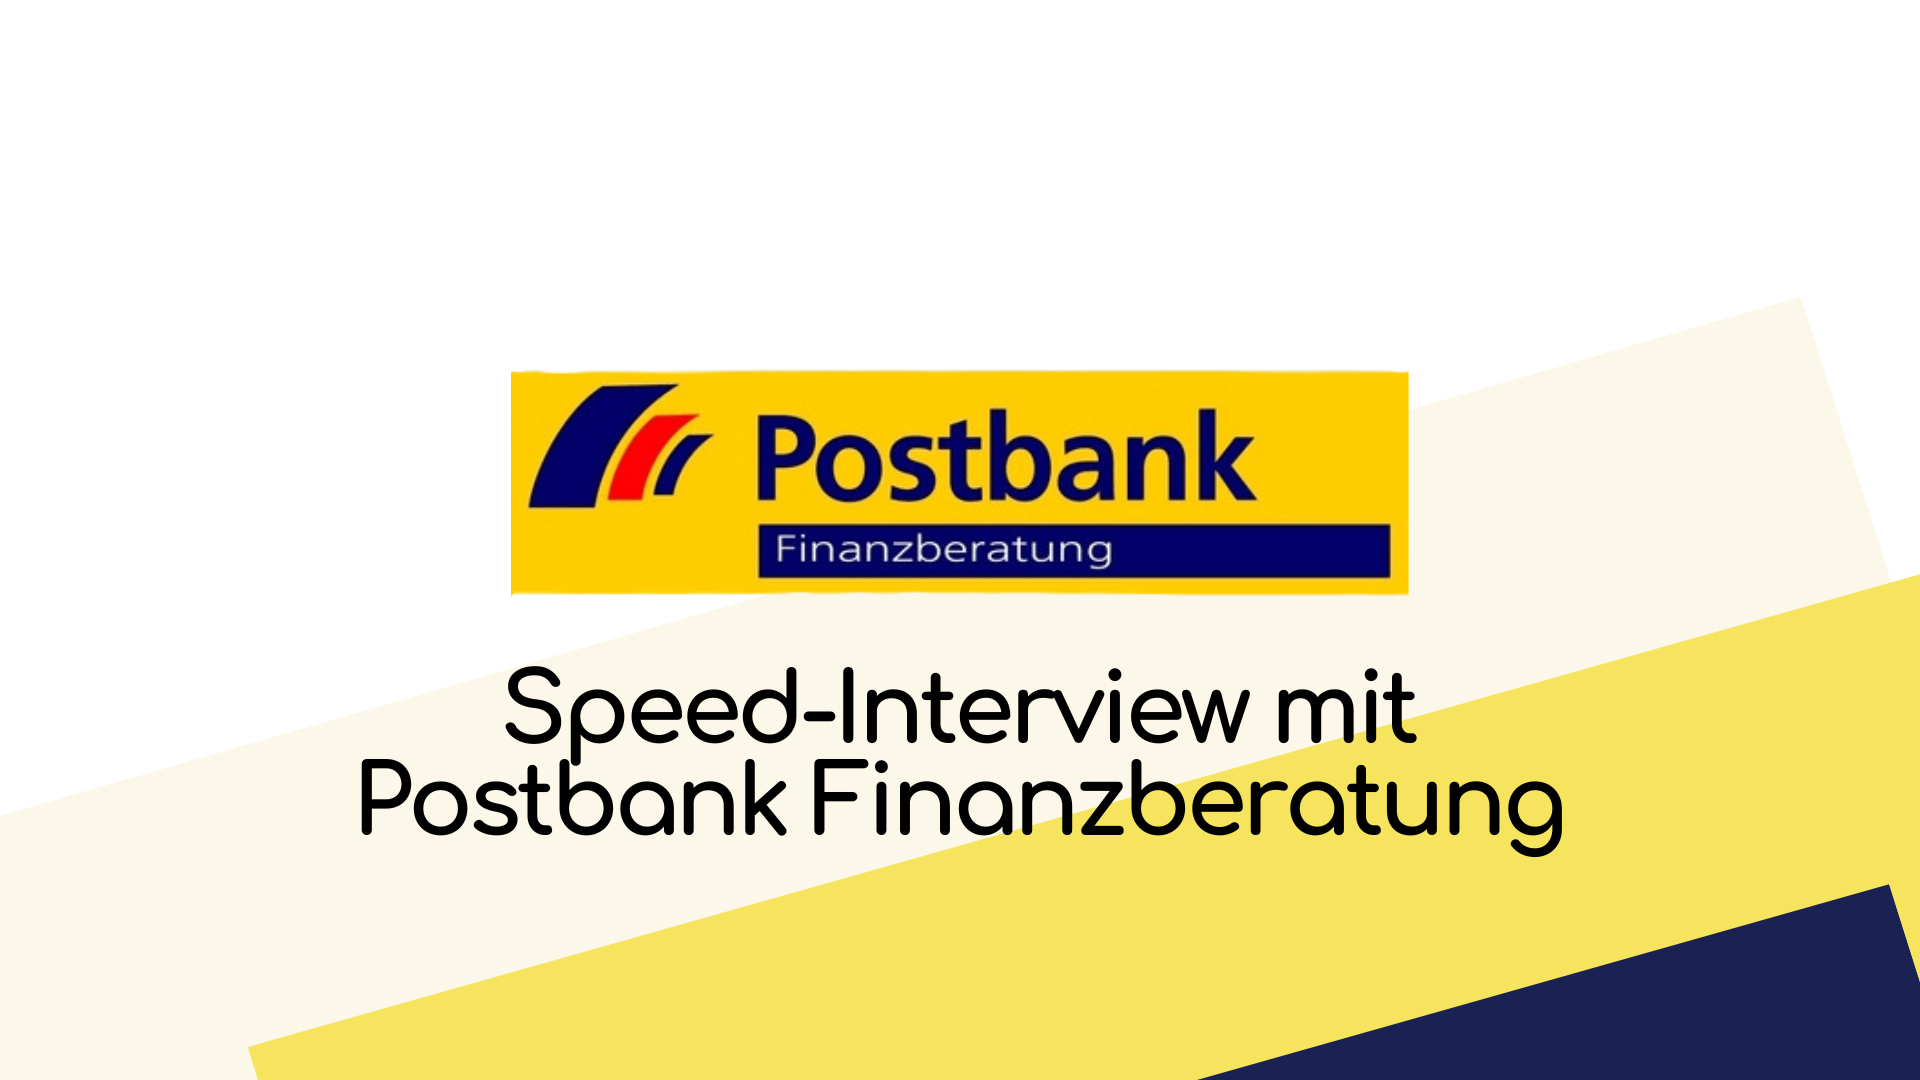 Cover Image for Arbeiten bei der Postbank Finanzberatung, das Unternehmen stellt sich vor